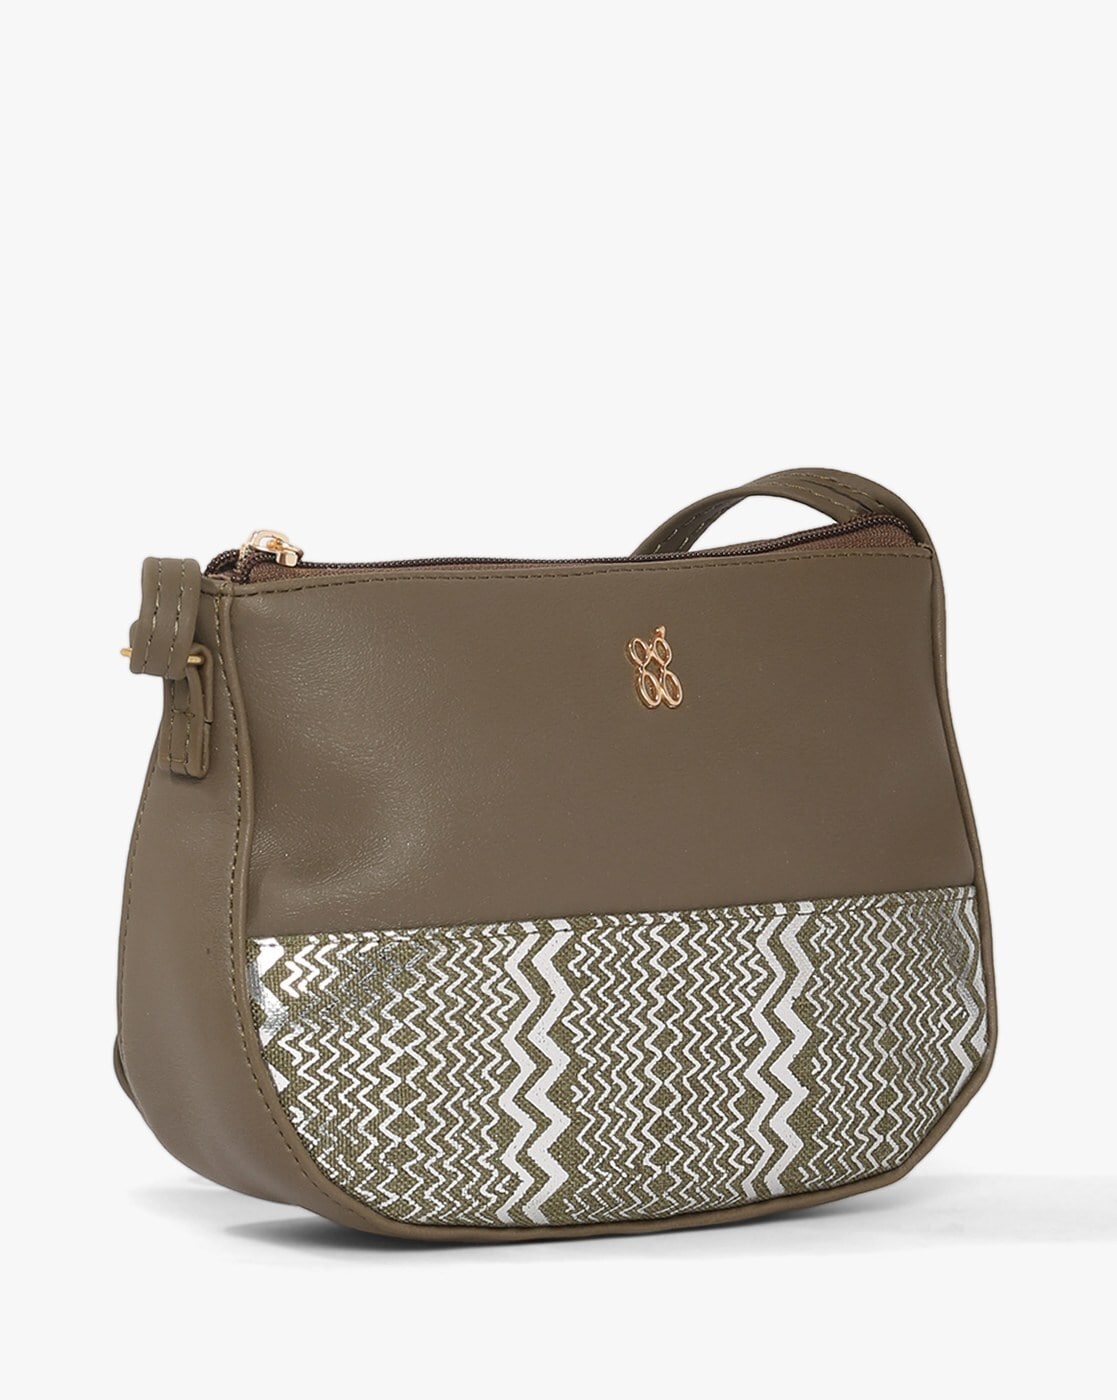 Handbags | SALE!🛑Brown Tote Bag Baggit Original Brand New | Freeup